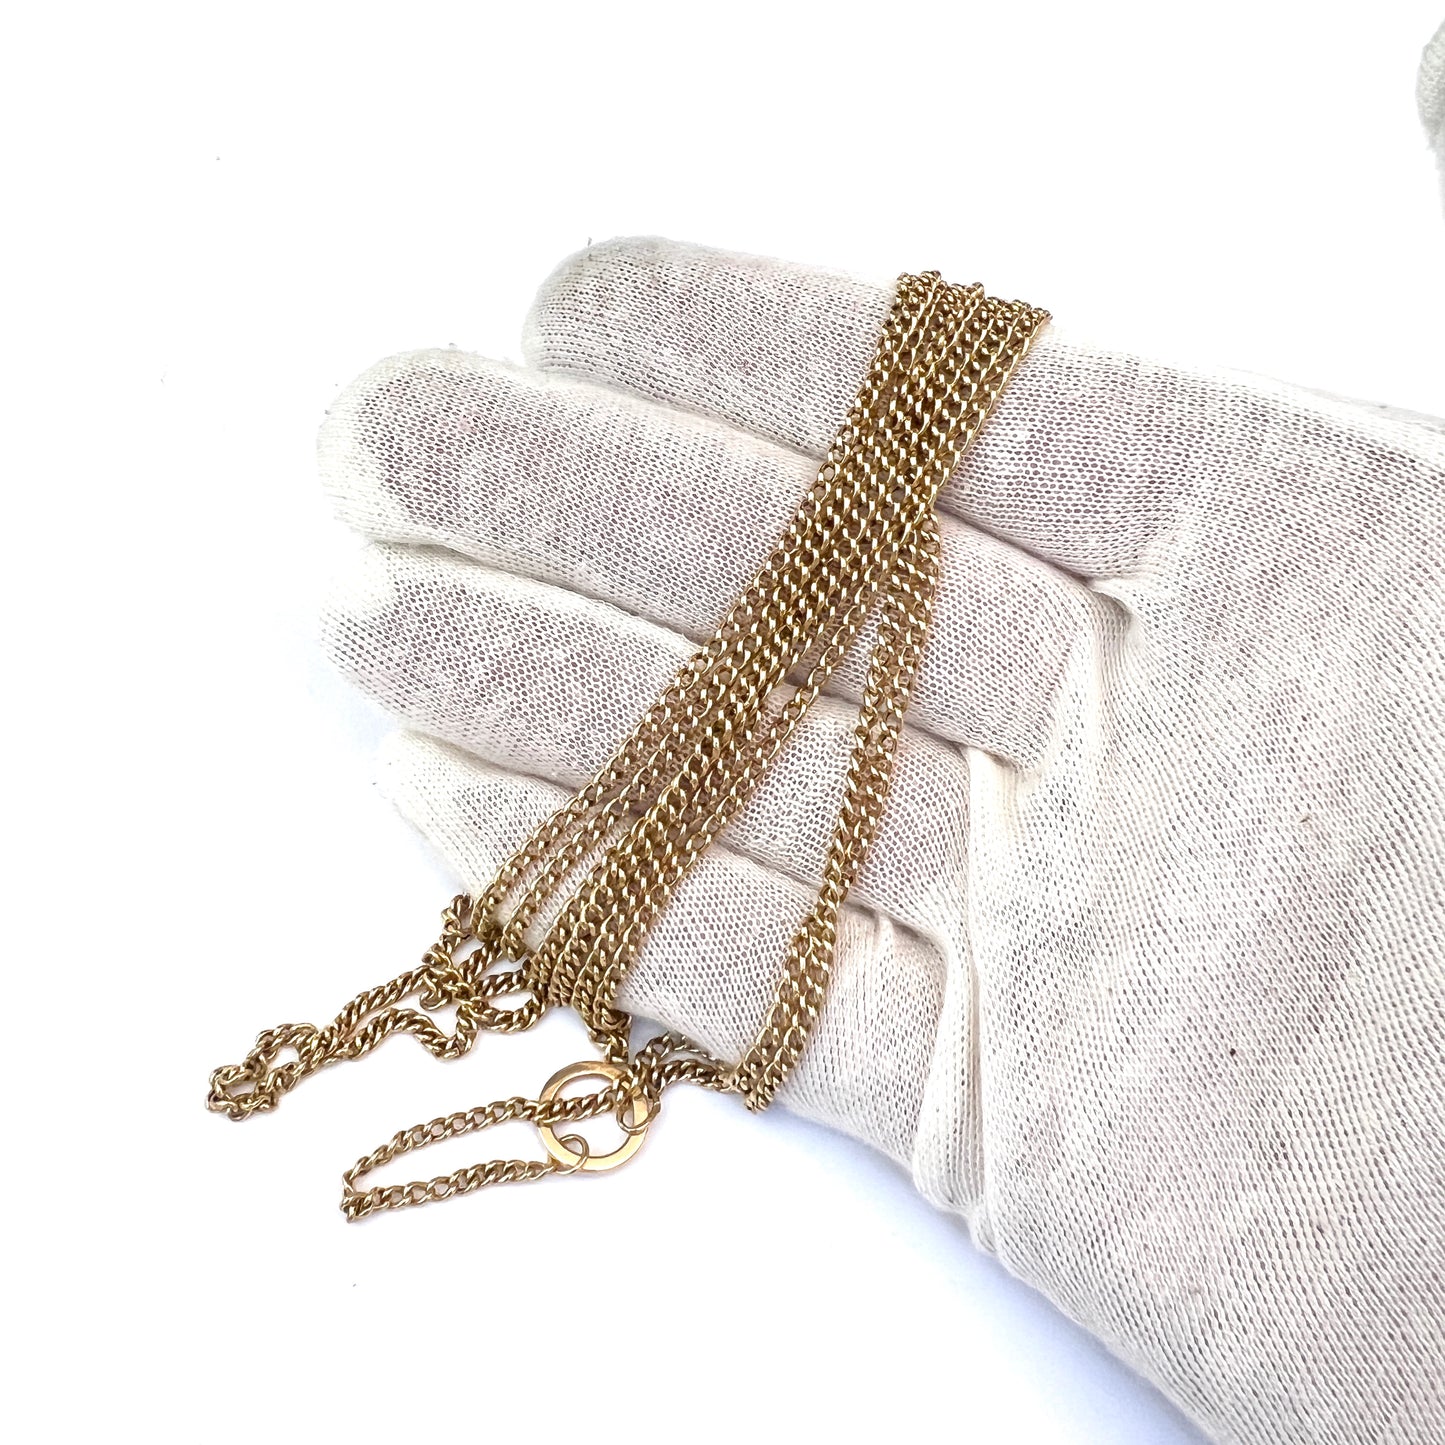 Sweden c 1900. Antique 18k Gold 54 inch Longuard Chain.